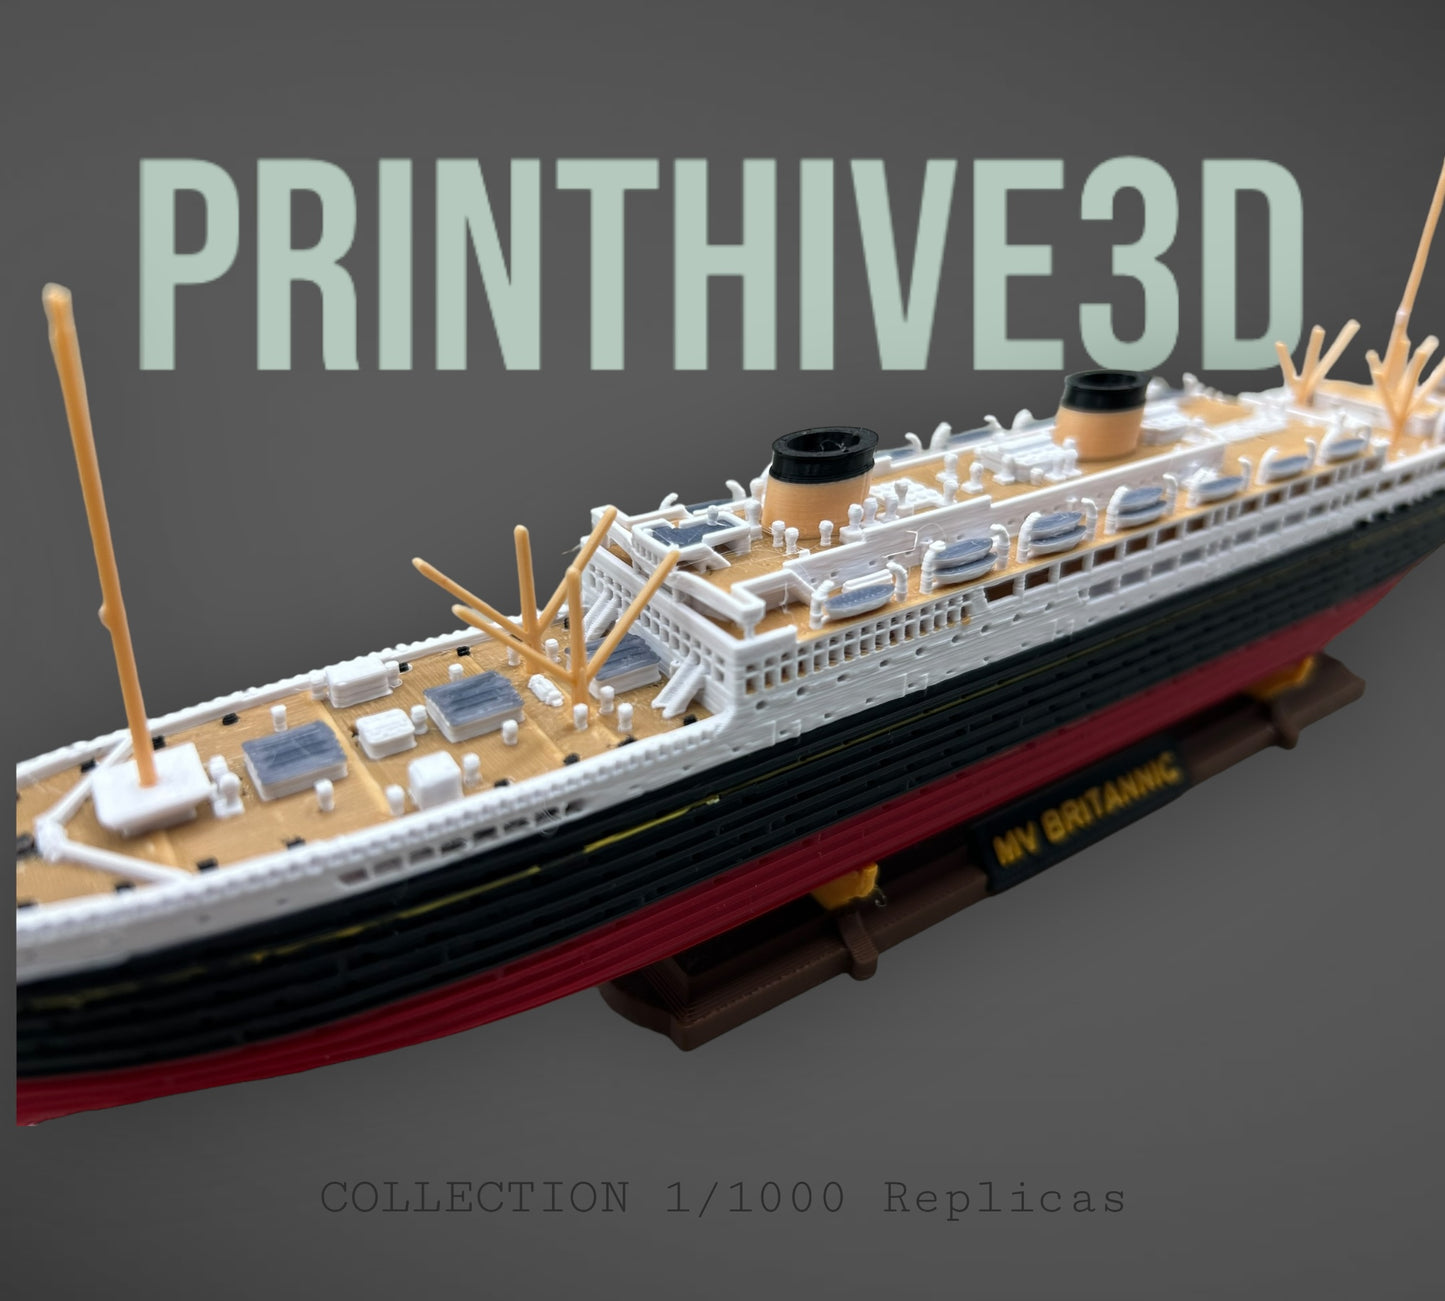 12” MV Britannic Replica